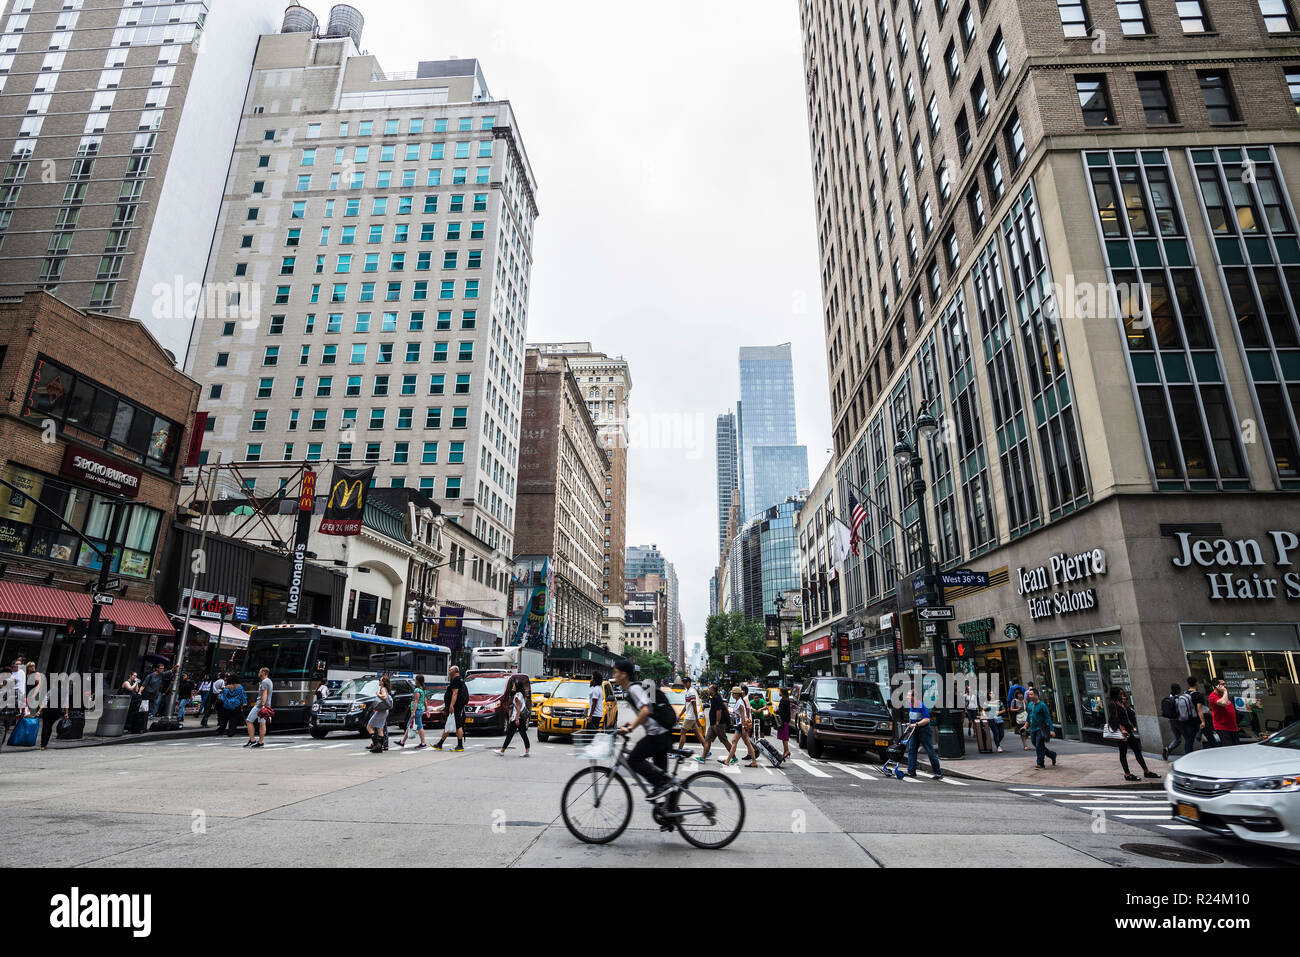 La città di New York, Stati Uniti d'America - Luglio 25, 2018: Sesta Avenue (6th Avenue) - ufficialmente Avenue of the Americas - con la gente e il ciclista intorno e traffico in Manh Foto Stock